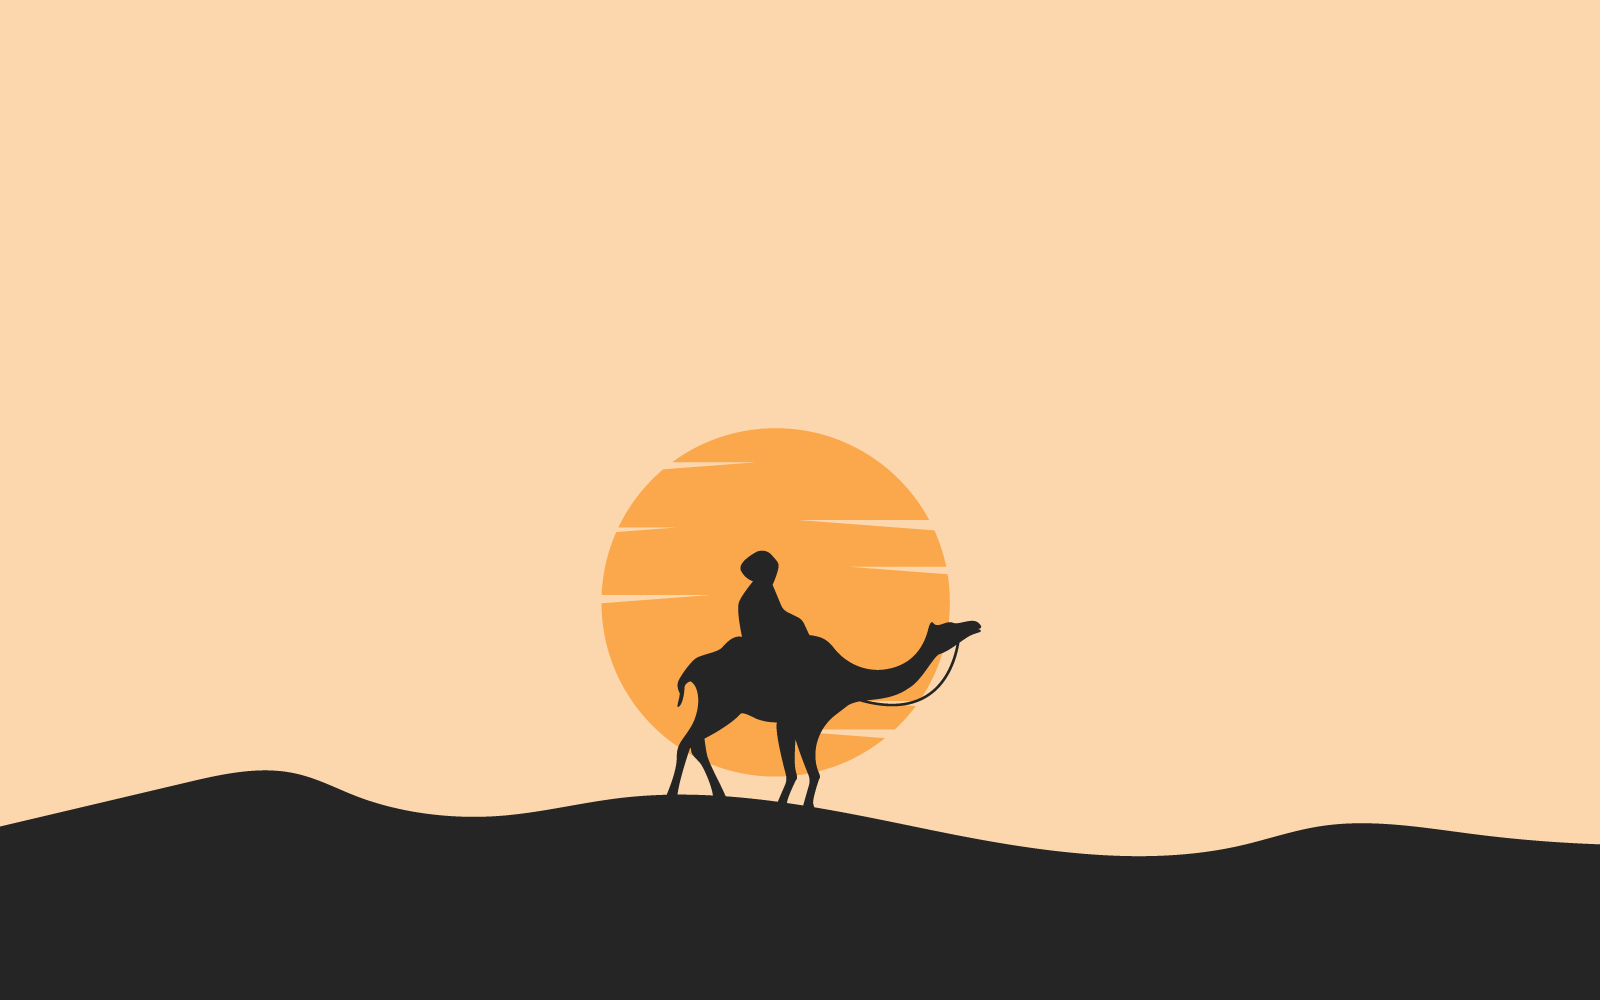 Camel logo flat design illustration template